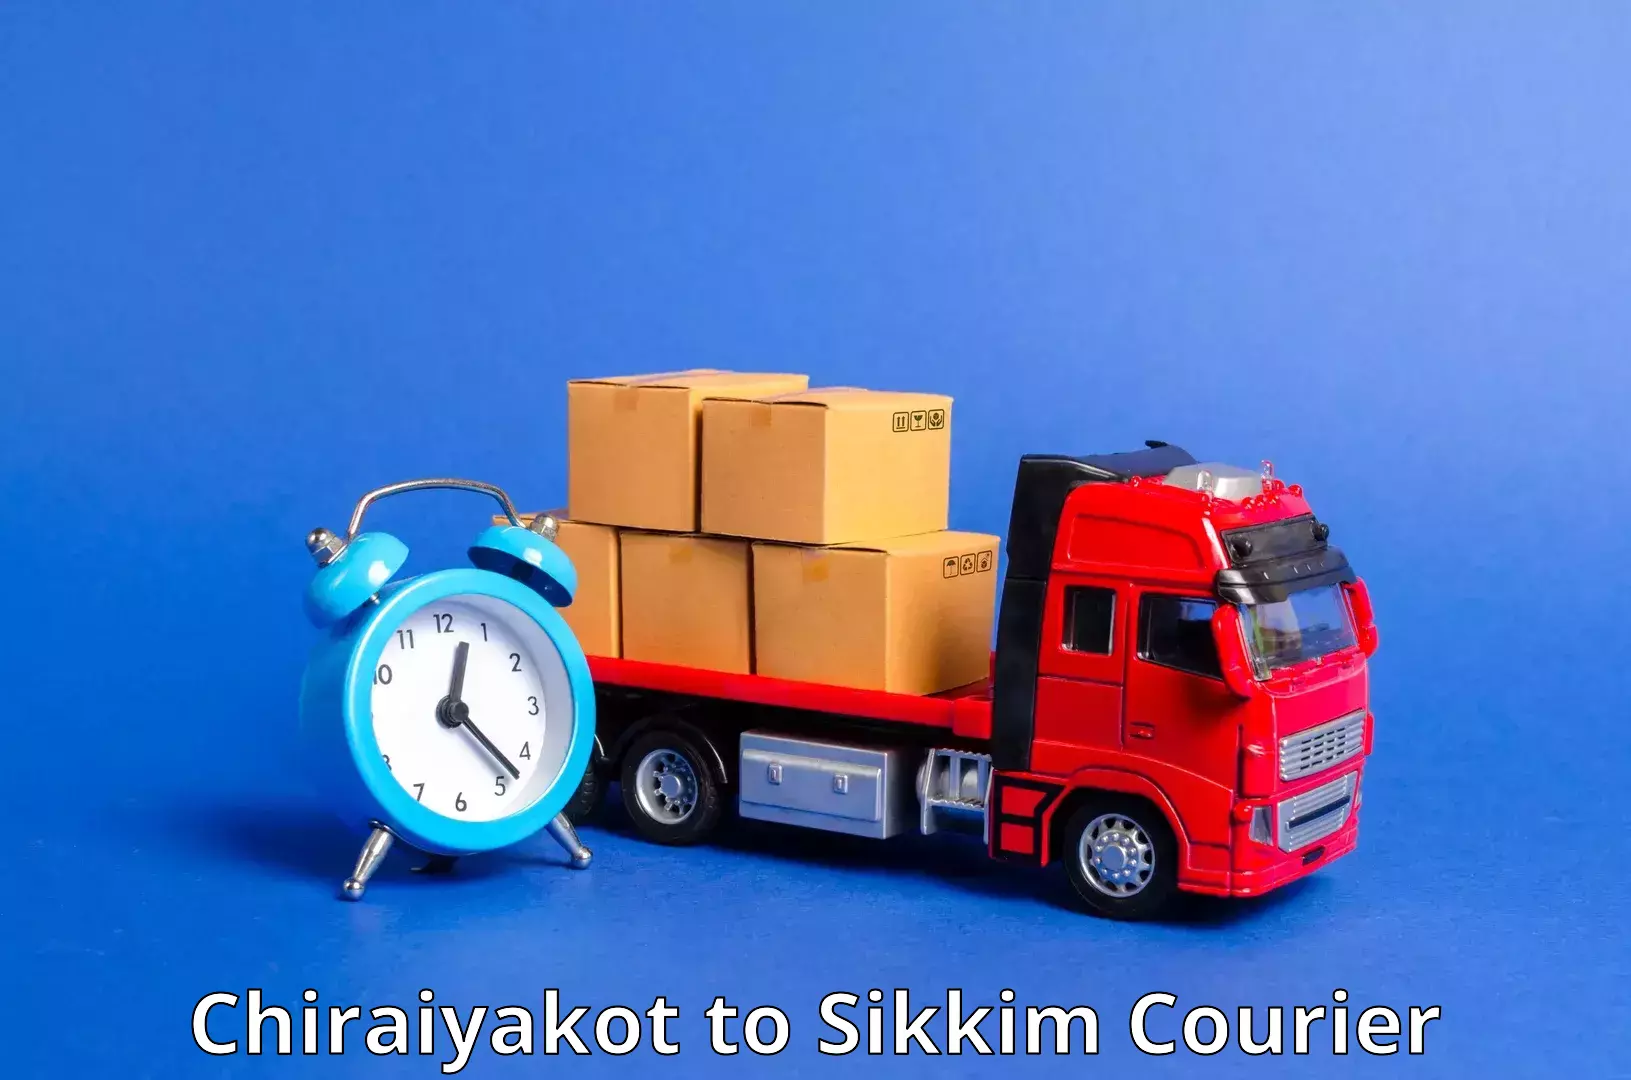 Next-generation courier services Chiraiyakot to North Sikkim